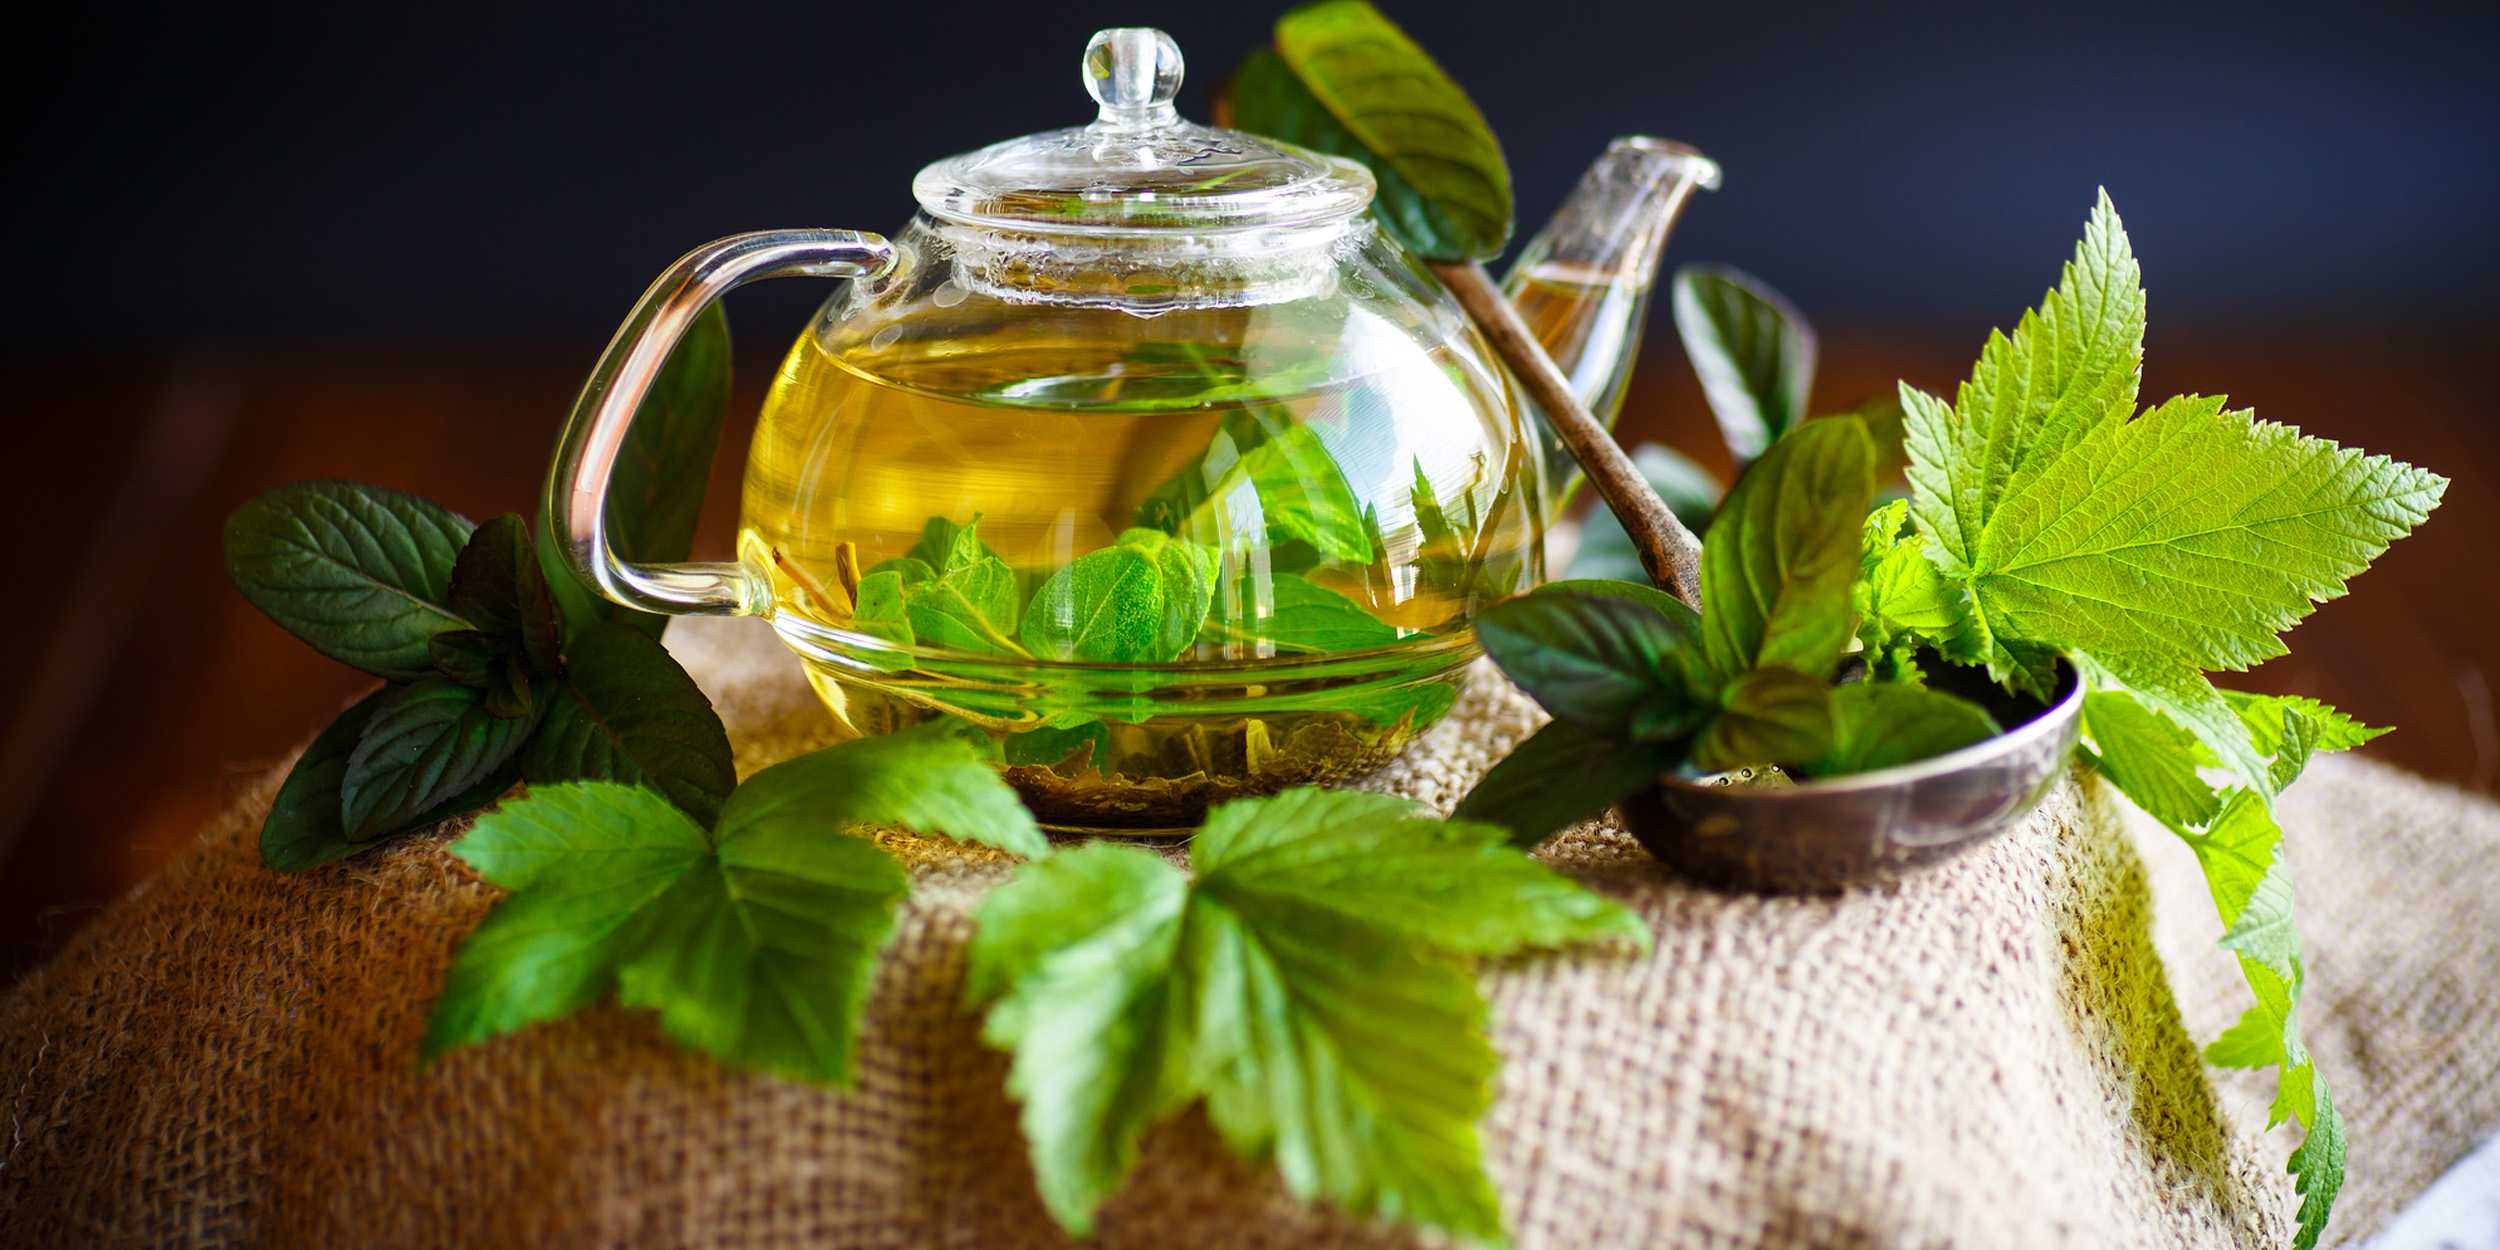 Чай из листьев смородины: какими свойствами обладает напиток и от чего помогает, как правильно собрать и заготовить листья, какие существуют рецепты приготовления напитка.